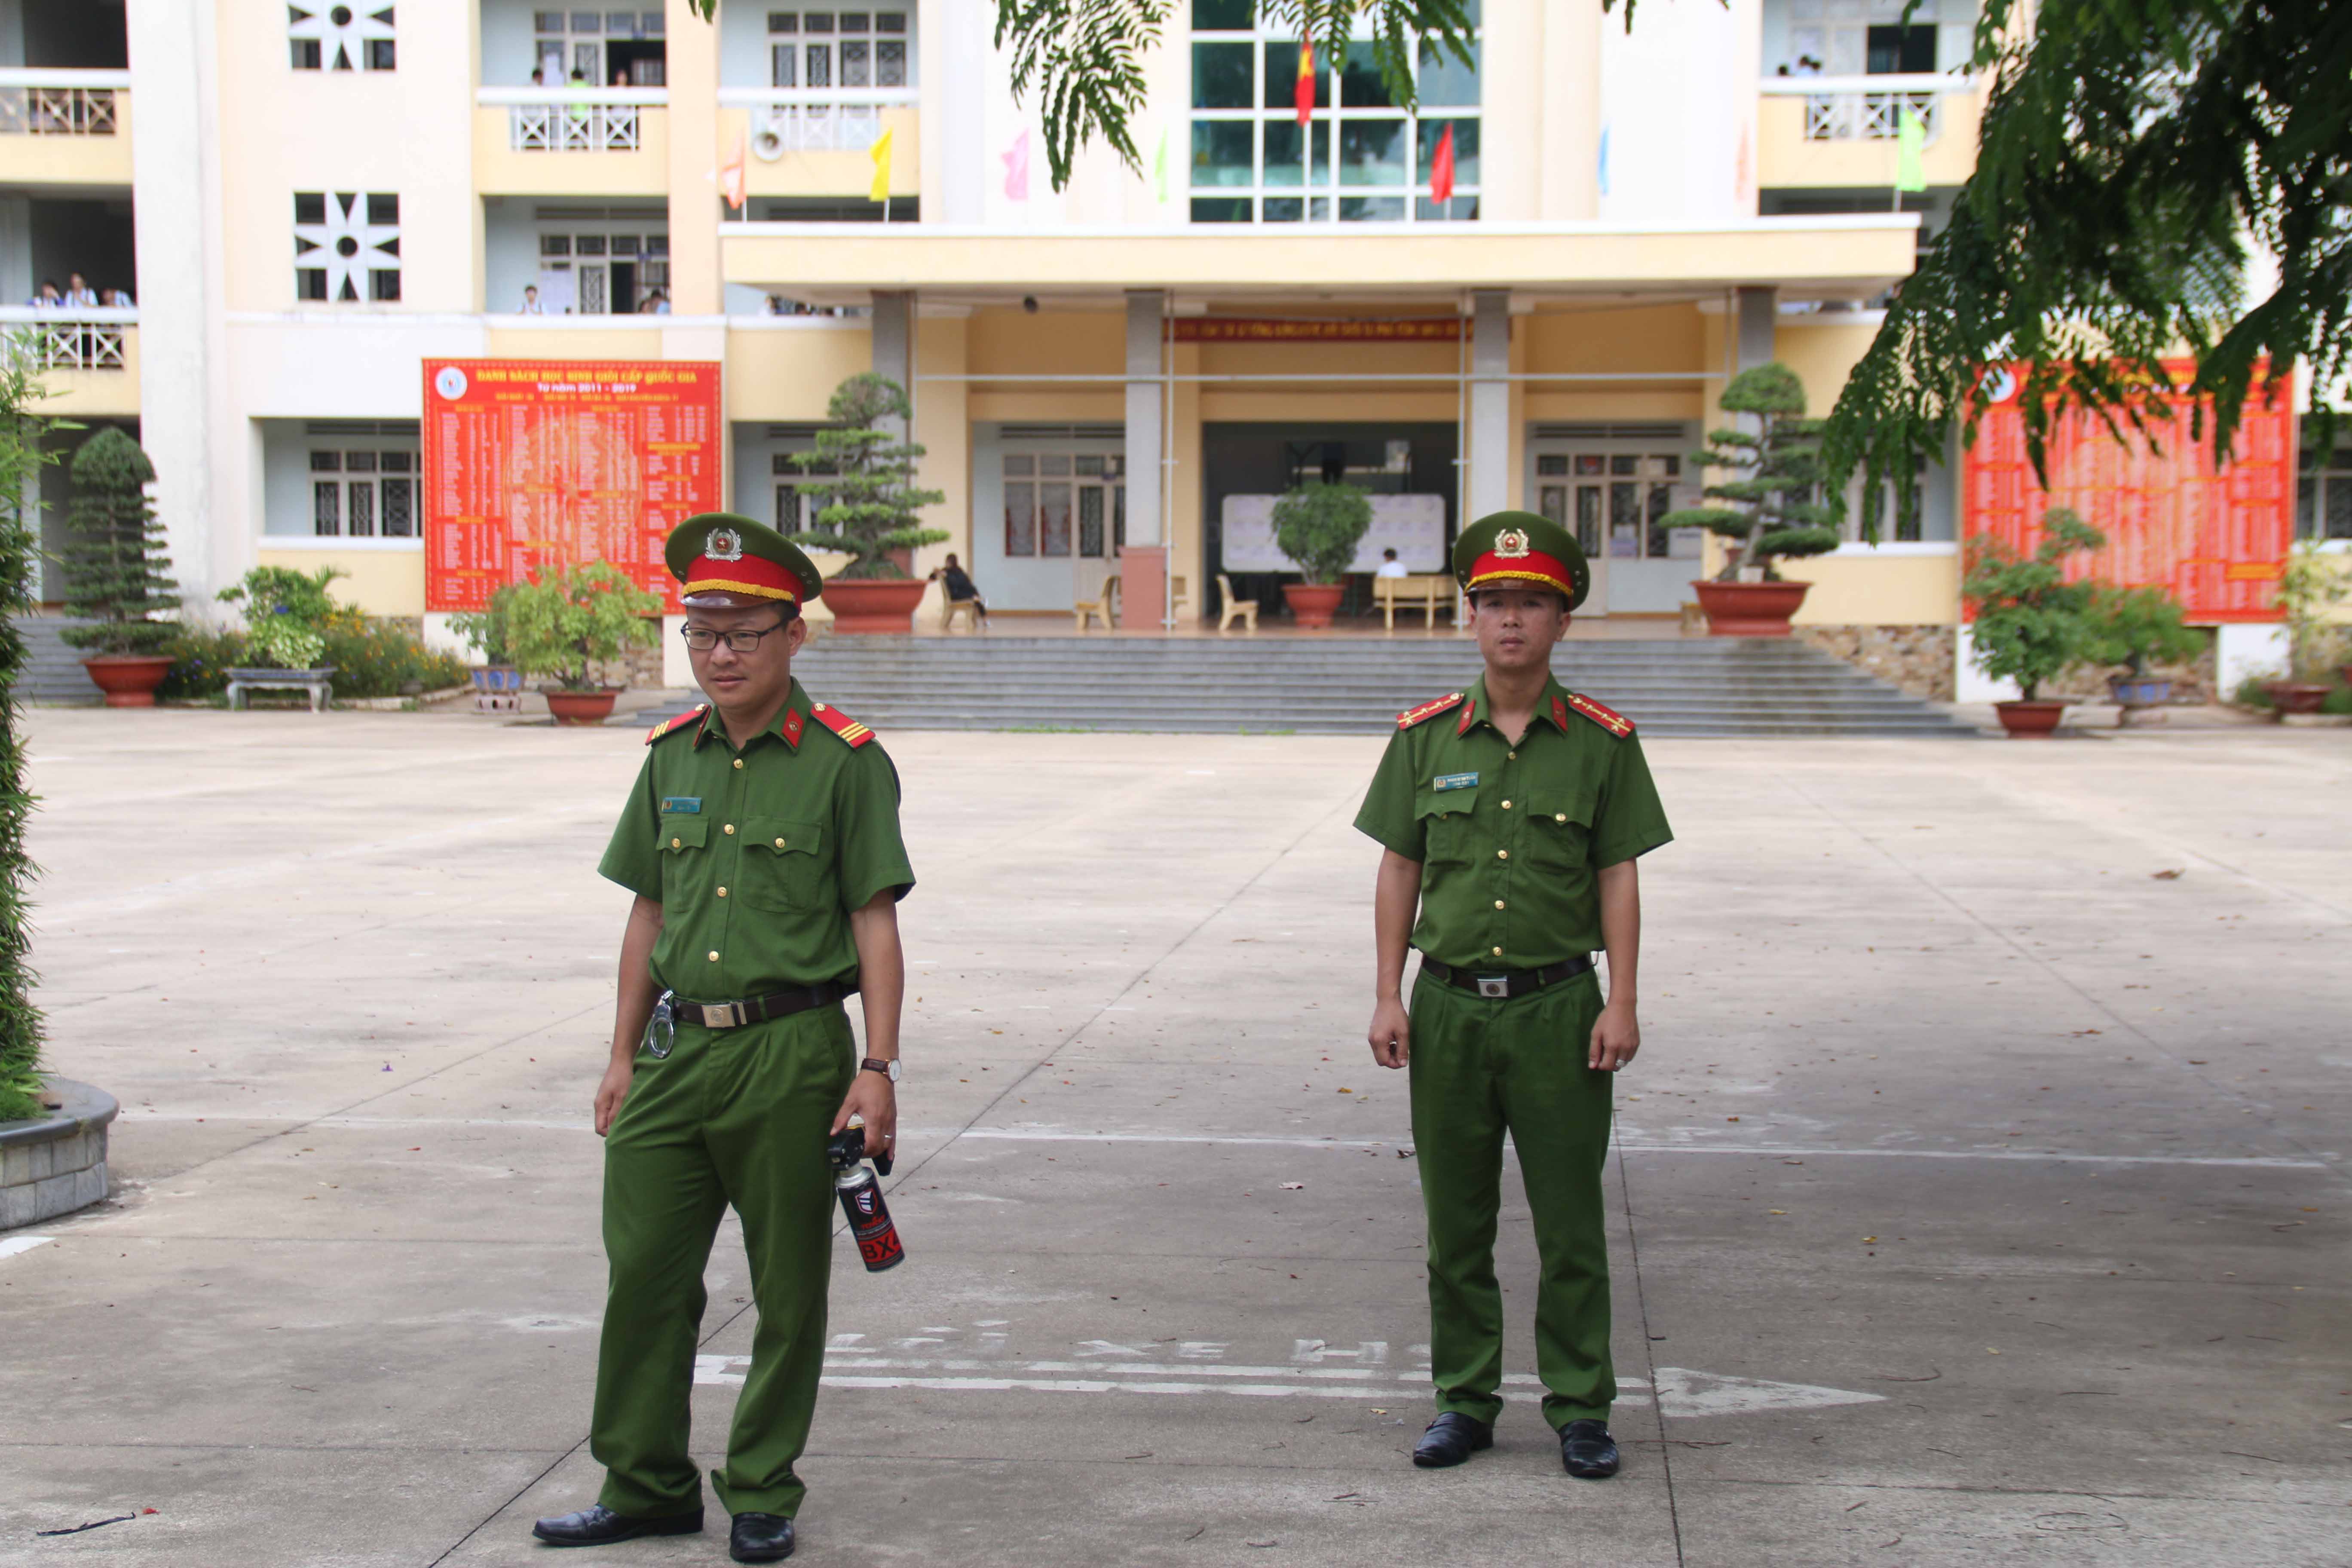 Lực lượng công an đảm bảo an ninh trật tự tại điểm thi Trường THPT chuyên Hùng Vương, TP. Pleiku. Ảnh: Chí Hào